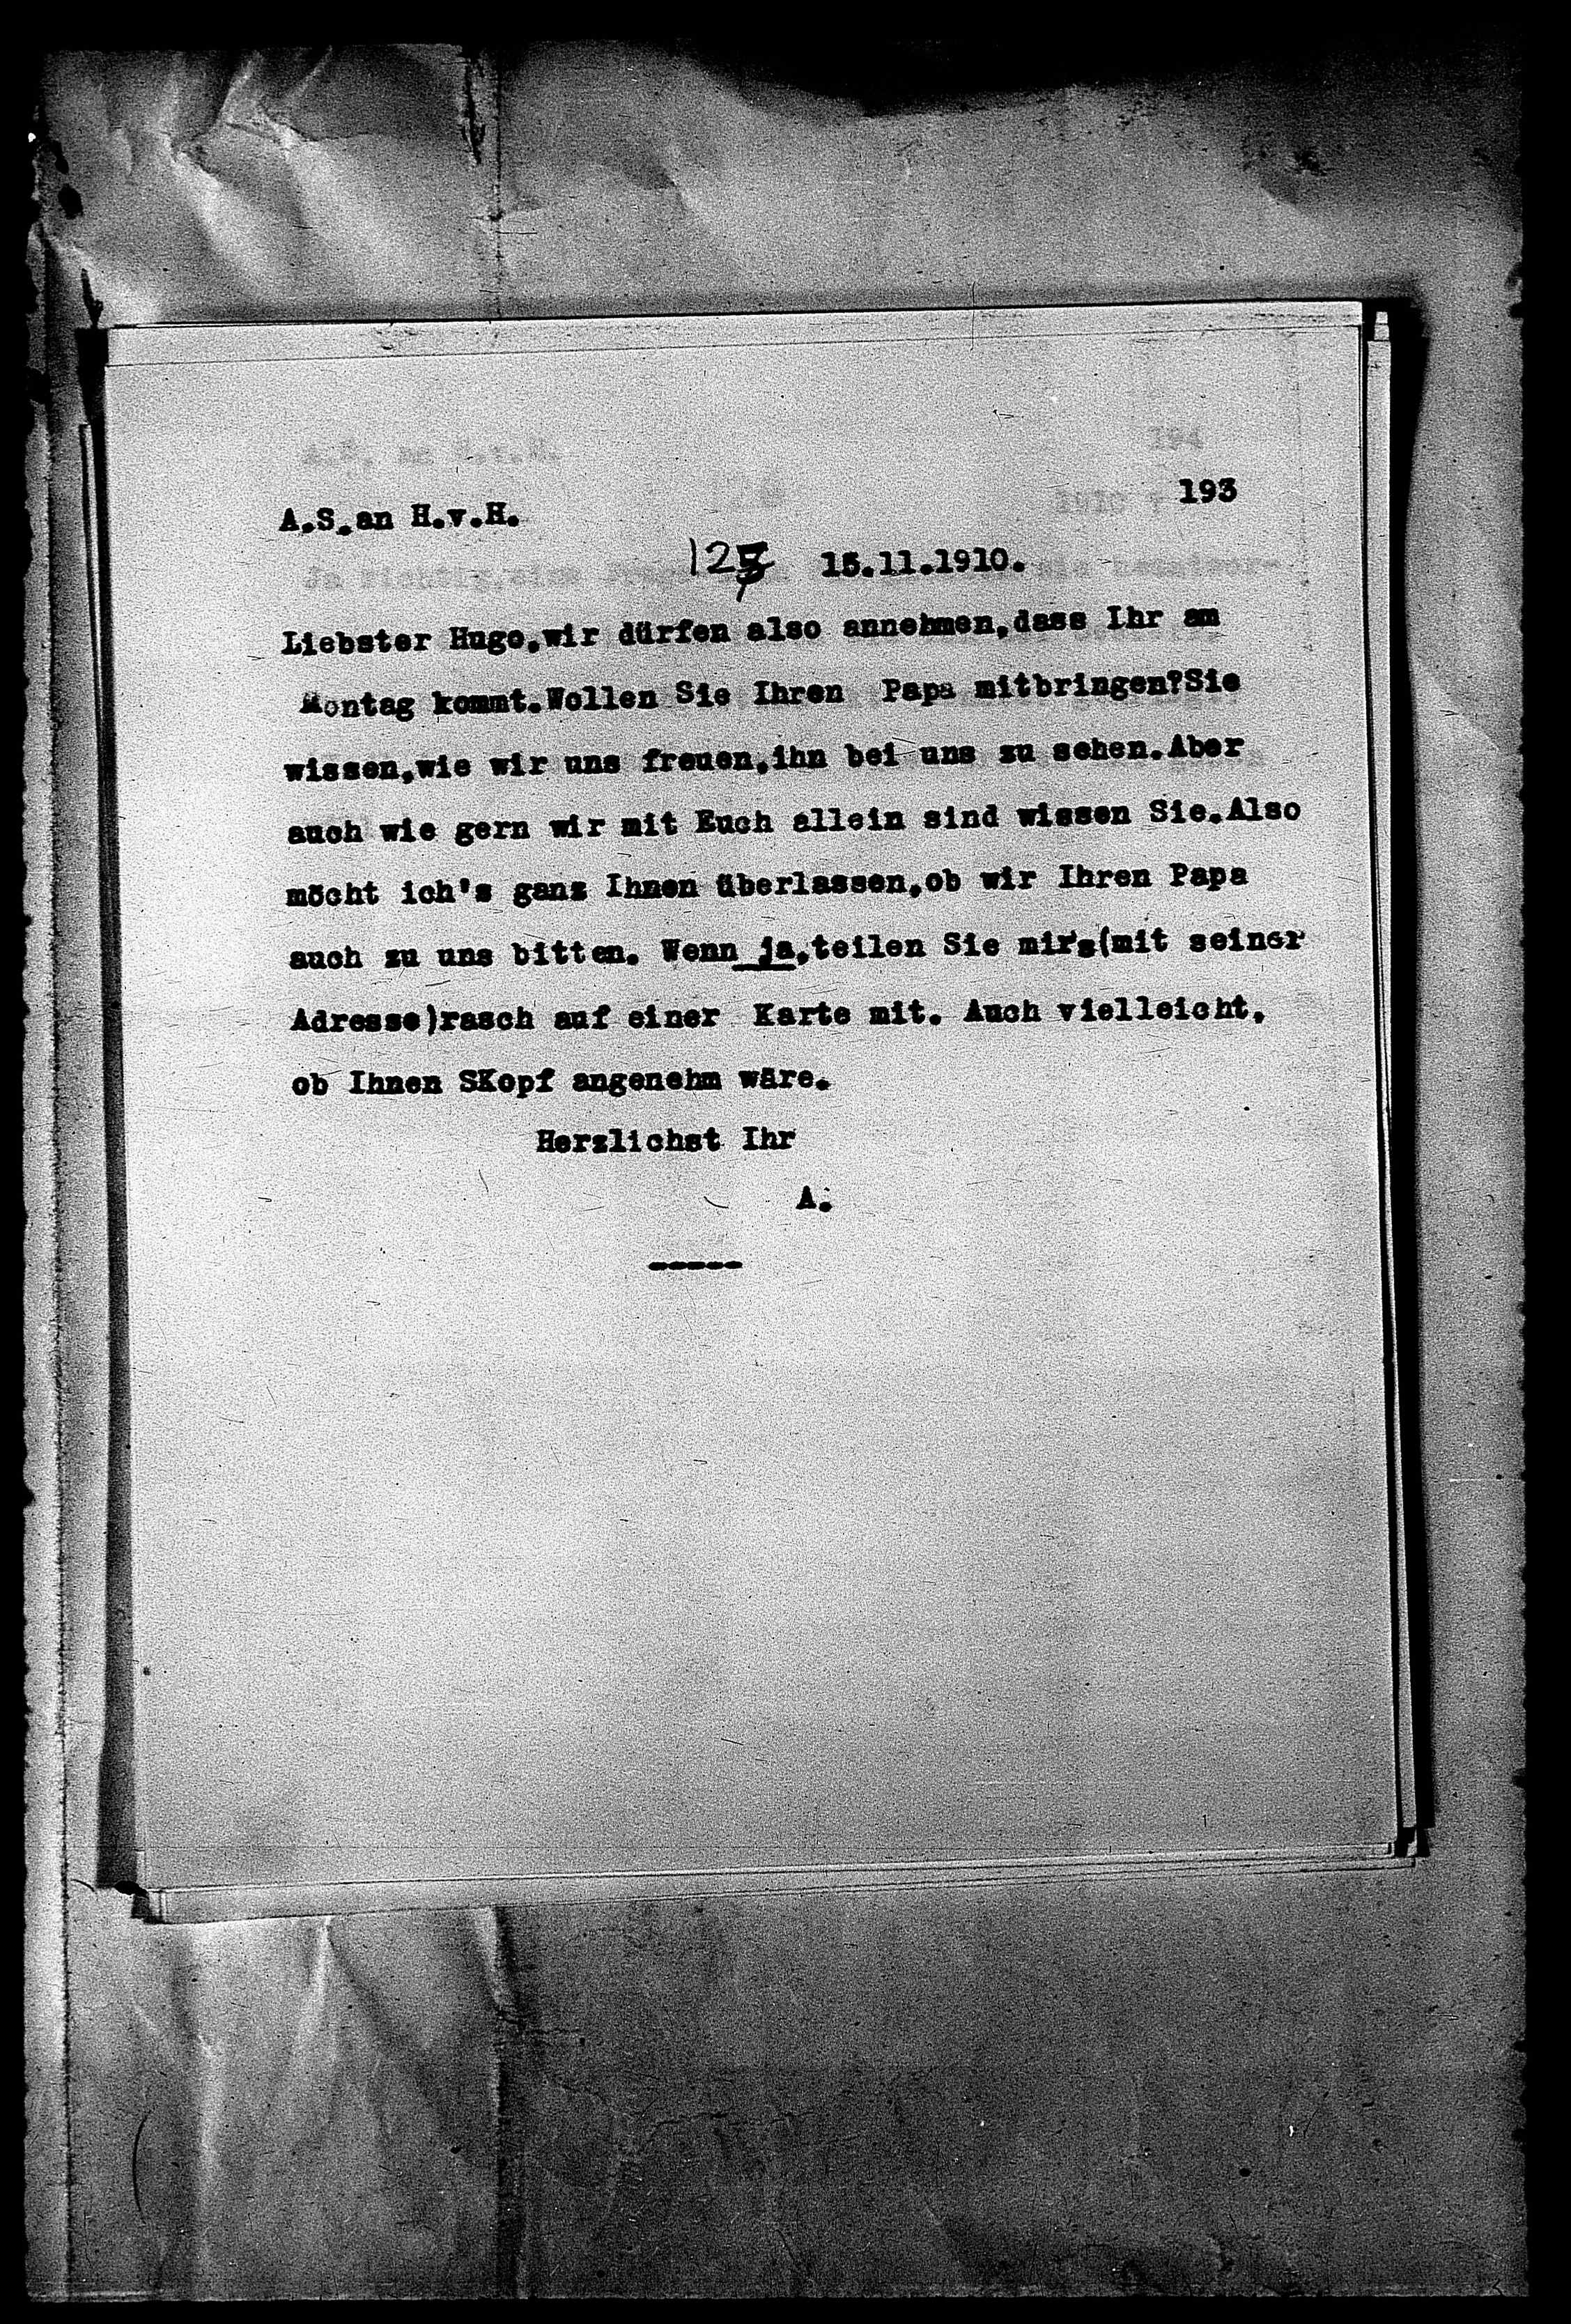 Vorschaubild für Hofmannsthal, Hugo von_AS an HvH Abschrift, HvH an AS, Originale (Mikrofilm 38), Seite 199